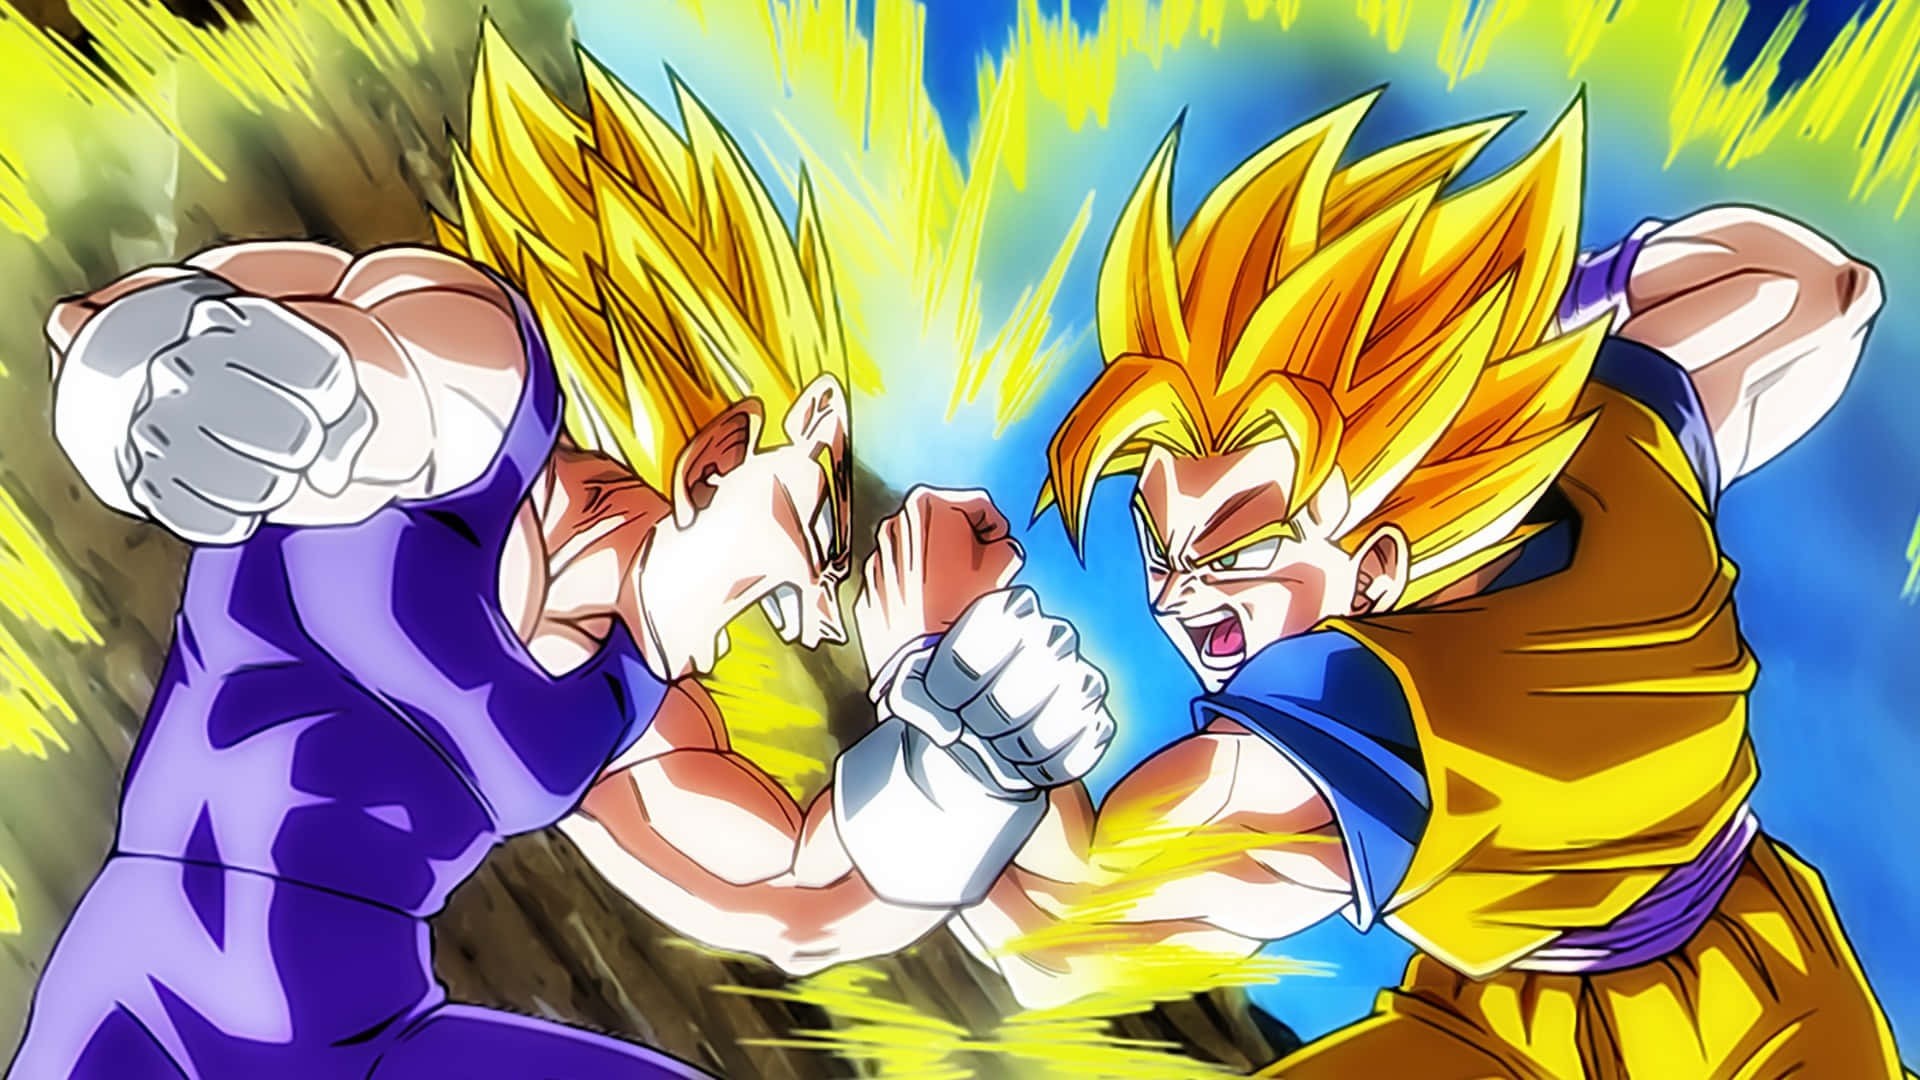 Imagemdo Vegta Lutando Contra O Goku.